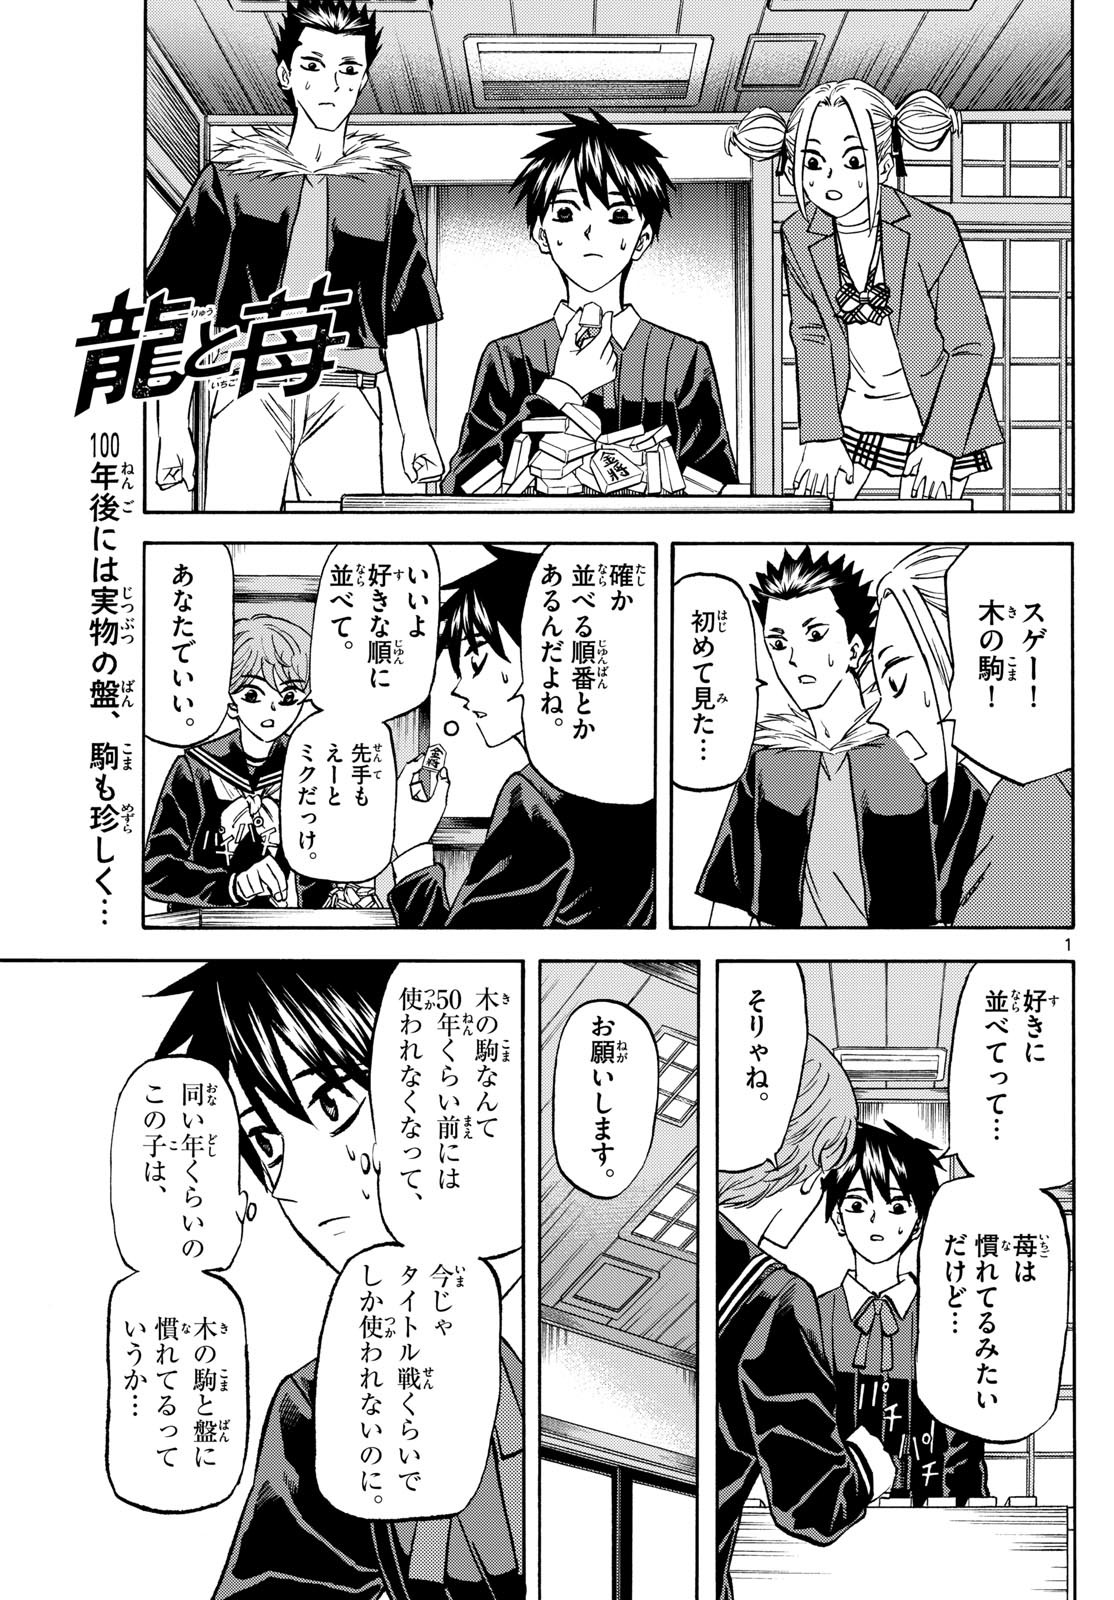 Tatsu to Ichigo - Chapter 184 - Page 1